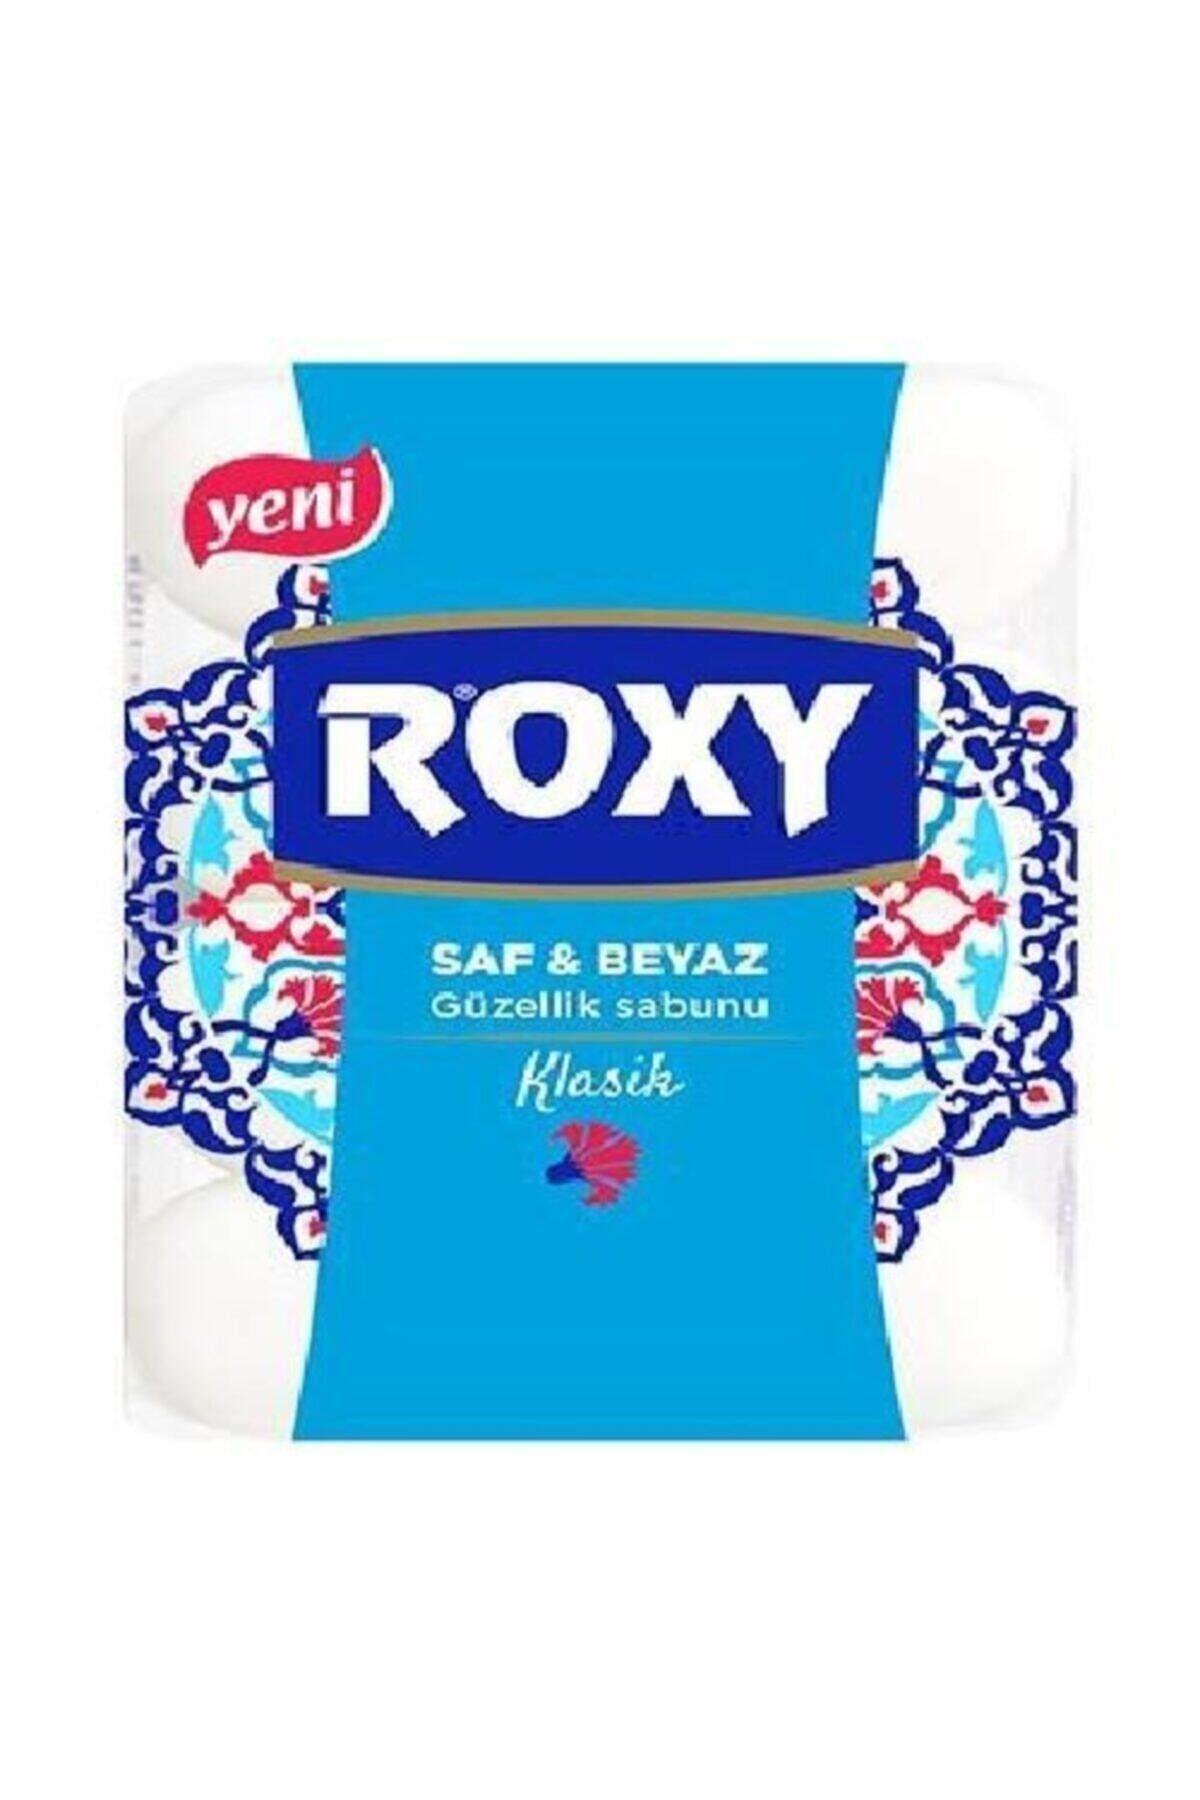 Dalan Roxy Güzellik Sabunu Saf Beyaz Klasik 4 X 70g